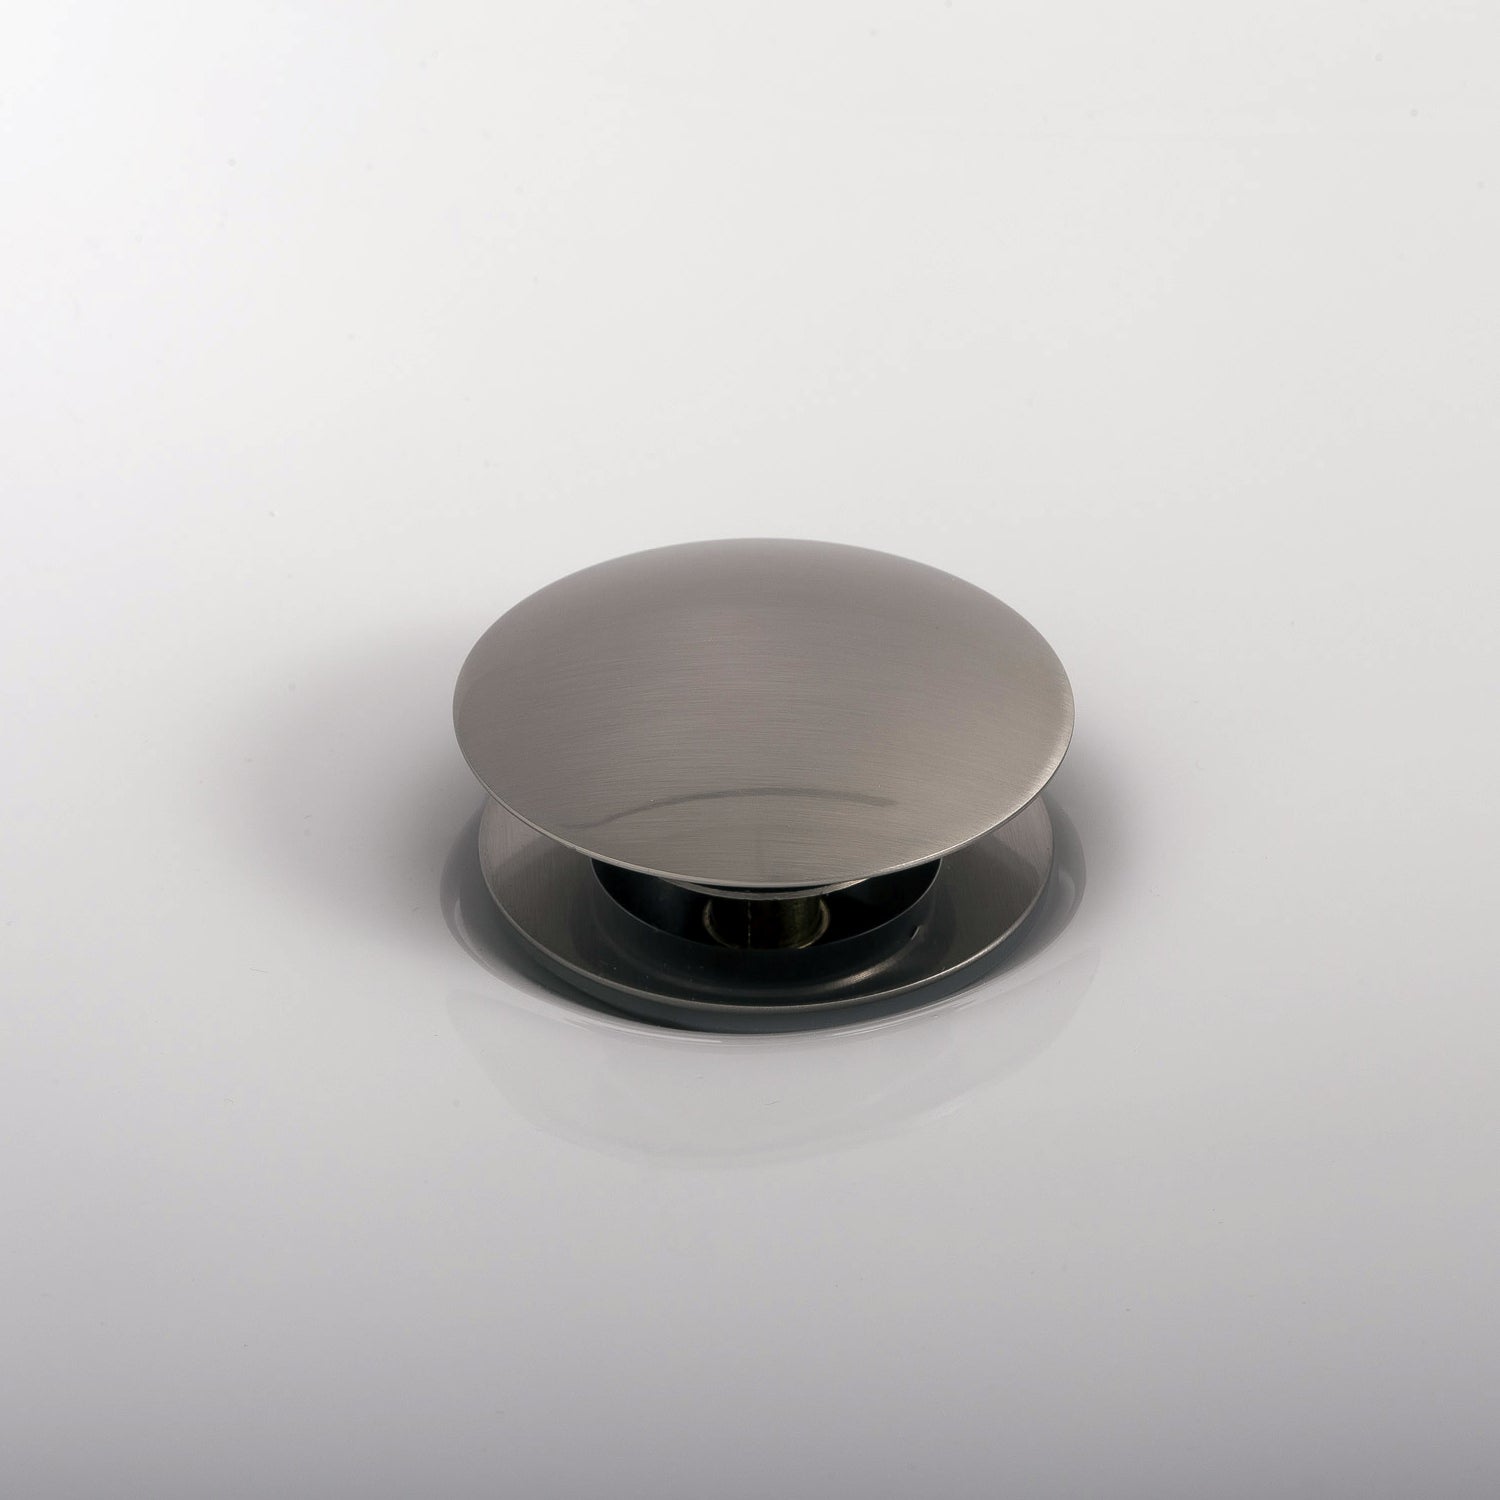 DAX Round Vanity Sink Pop up Drain, Brass Body, 2-5/8 x 8-5/8 Inches (DAX-82006)